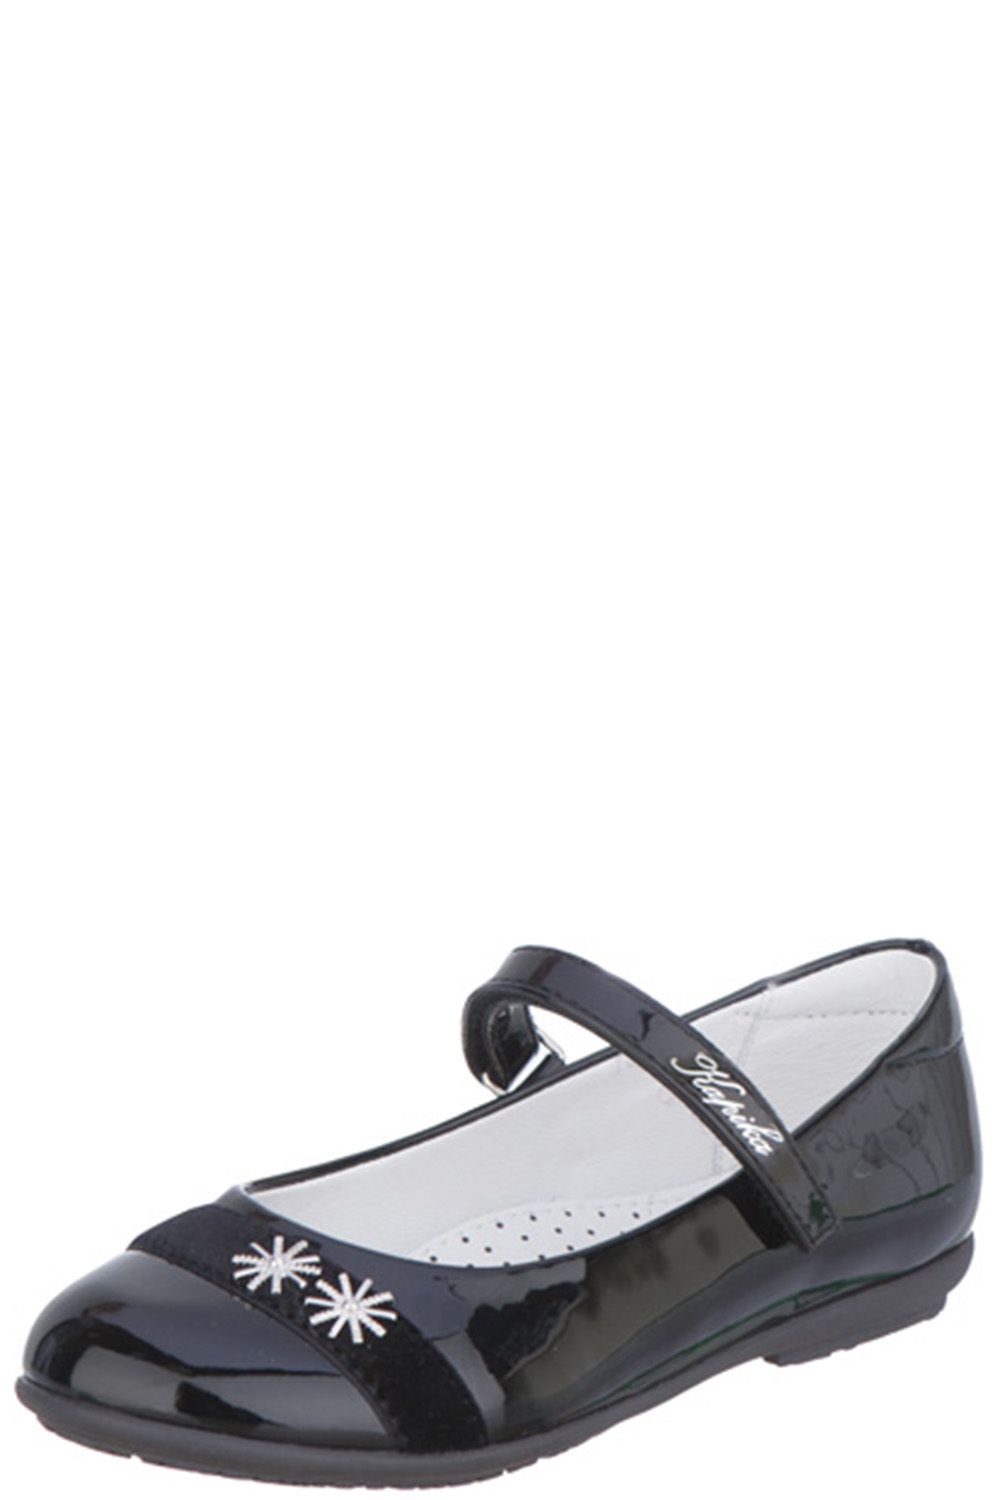 Туфли Kapika, размер 33, цвет черный 93129-1 - фото 1